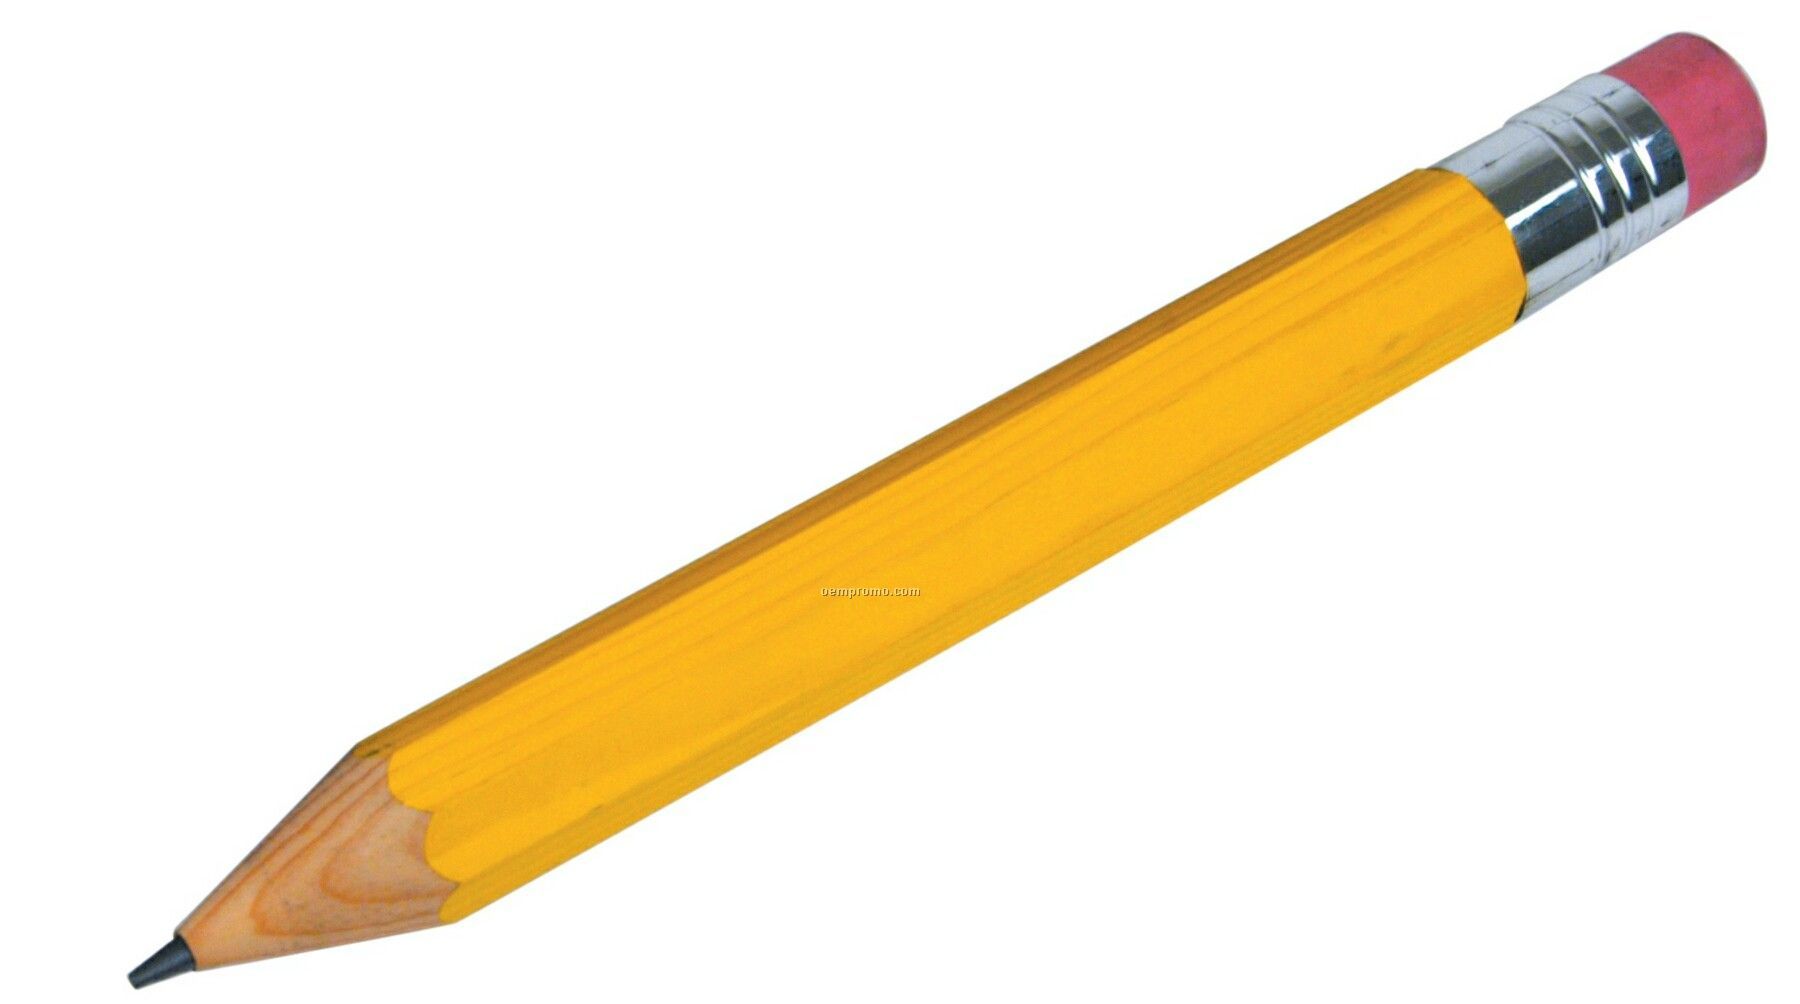 Pencil #1